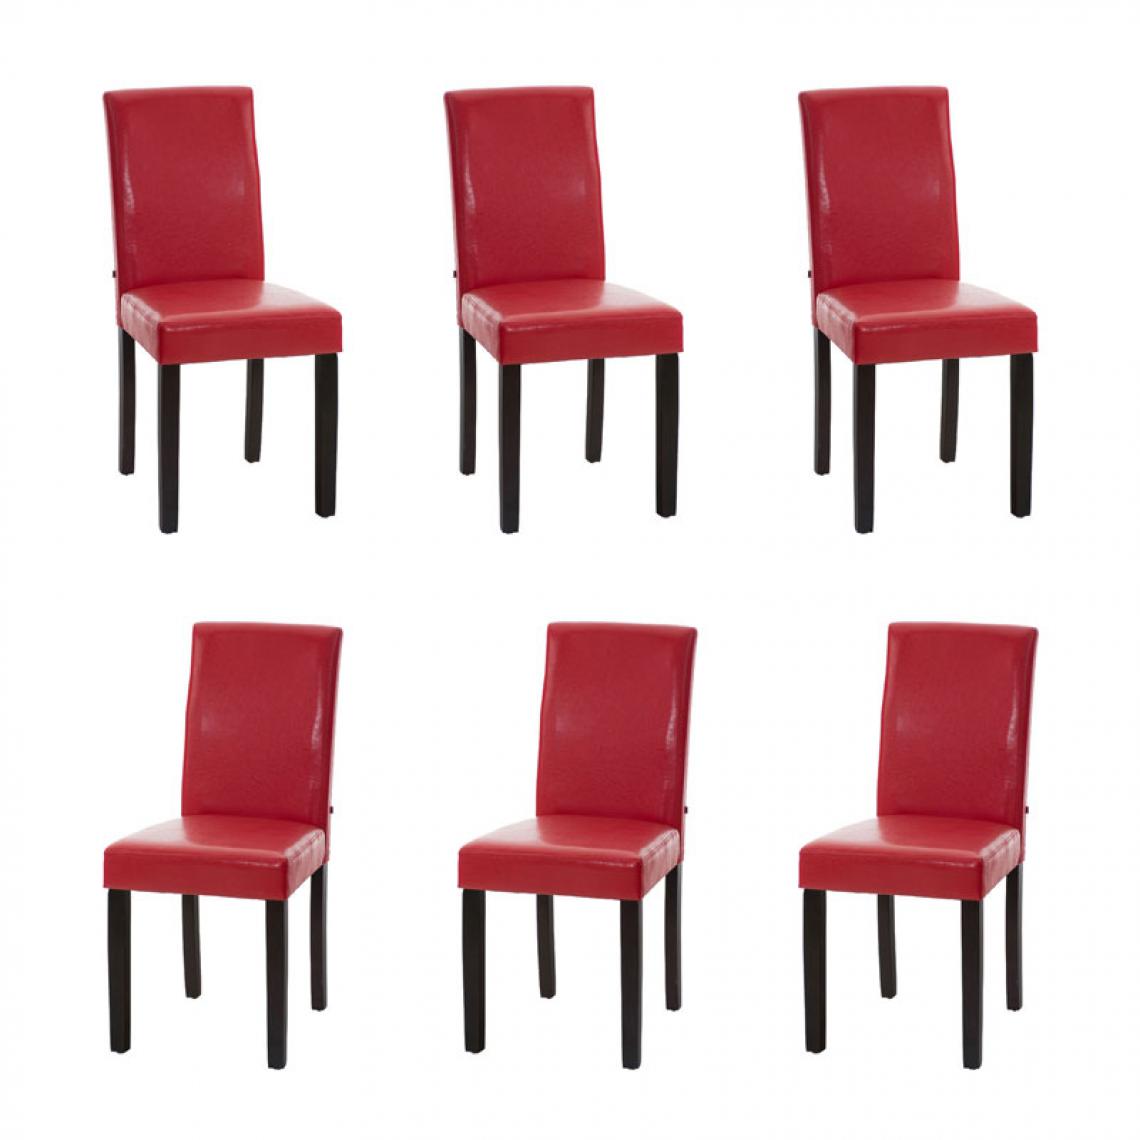 Icaverne - Joli Lot de 6 chaises de salle à manger reference Rabat marron foncé couleur rouge - Chaises